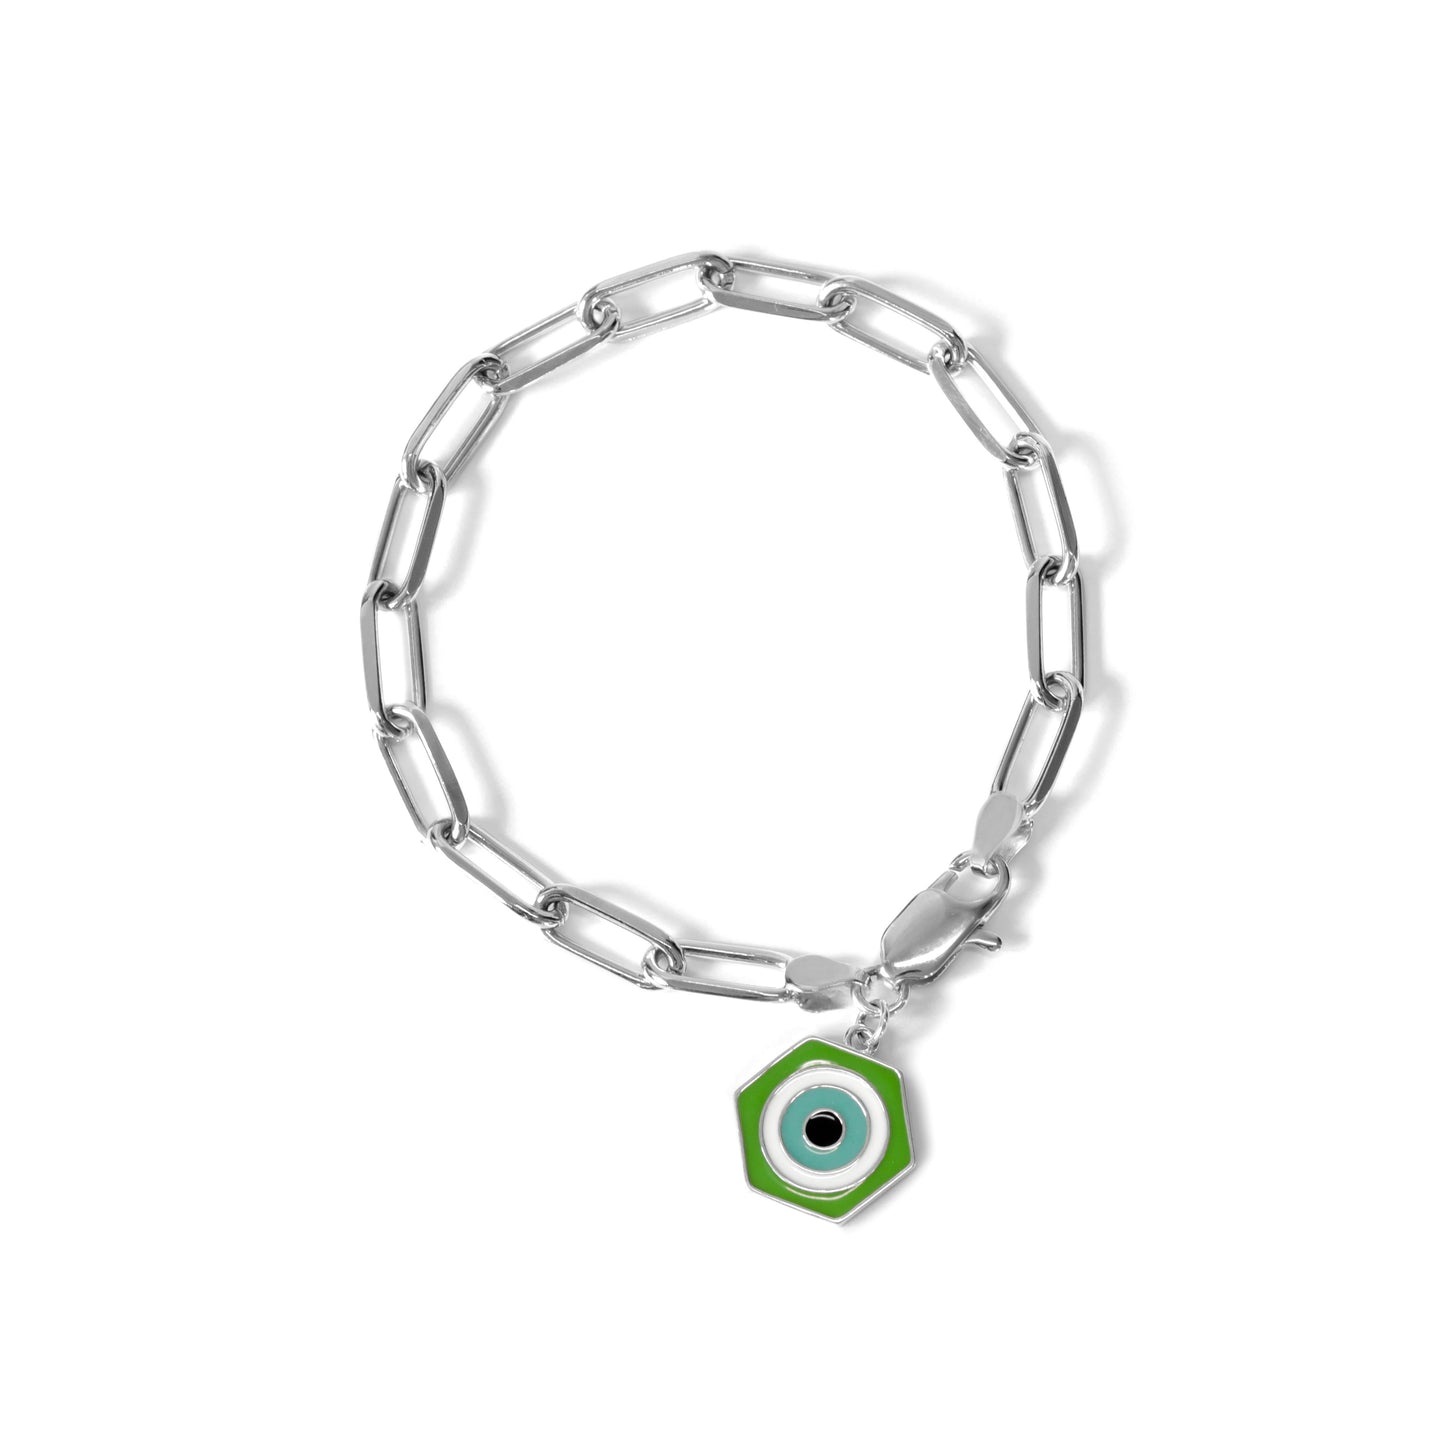 MORA bijoux, bracelet protection symbolisé par un oeil stylisé hexagonal émaillé vert blanc et bleu ciel, monté sur une chaîne en argent 925.